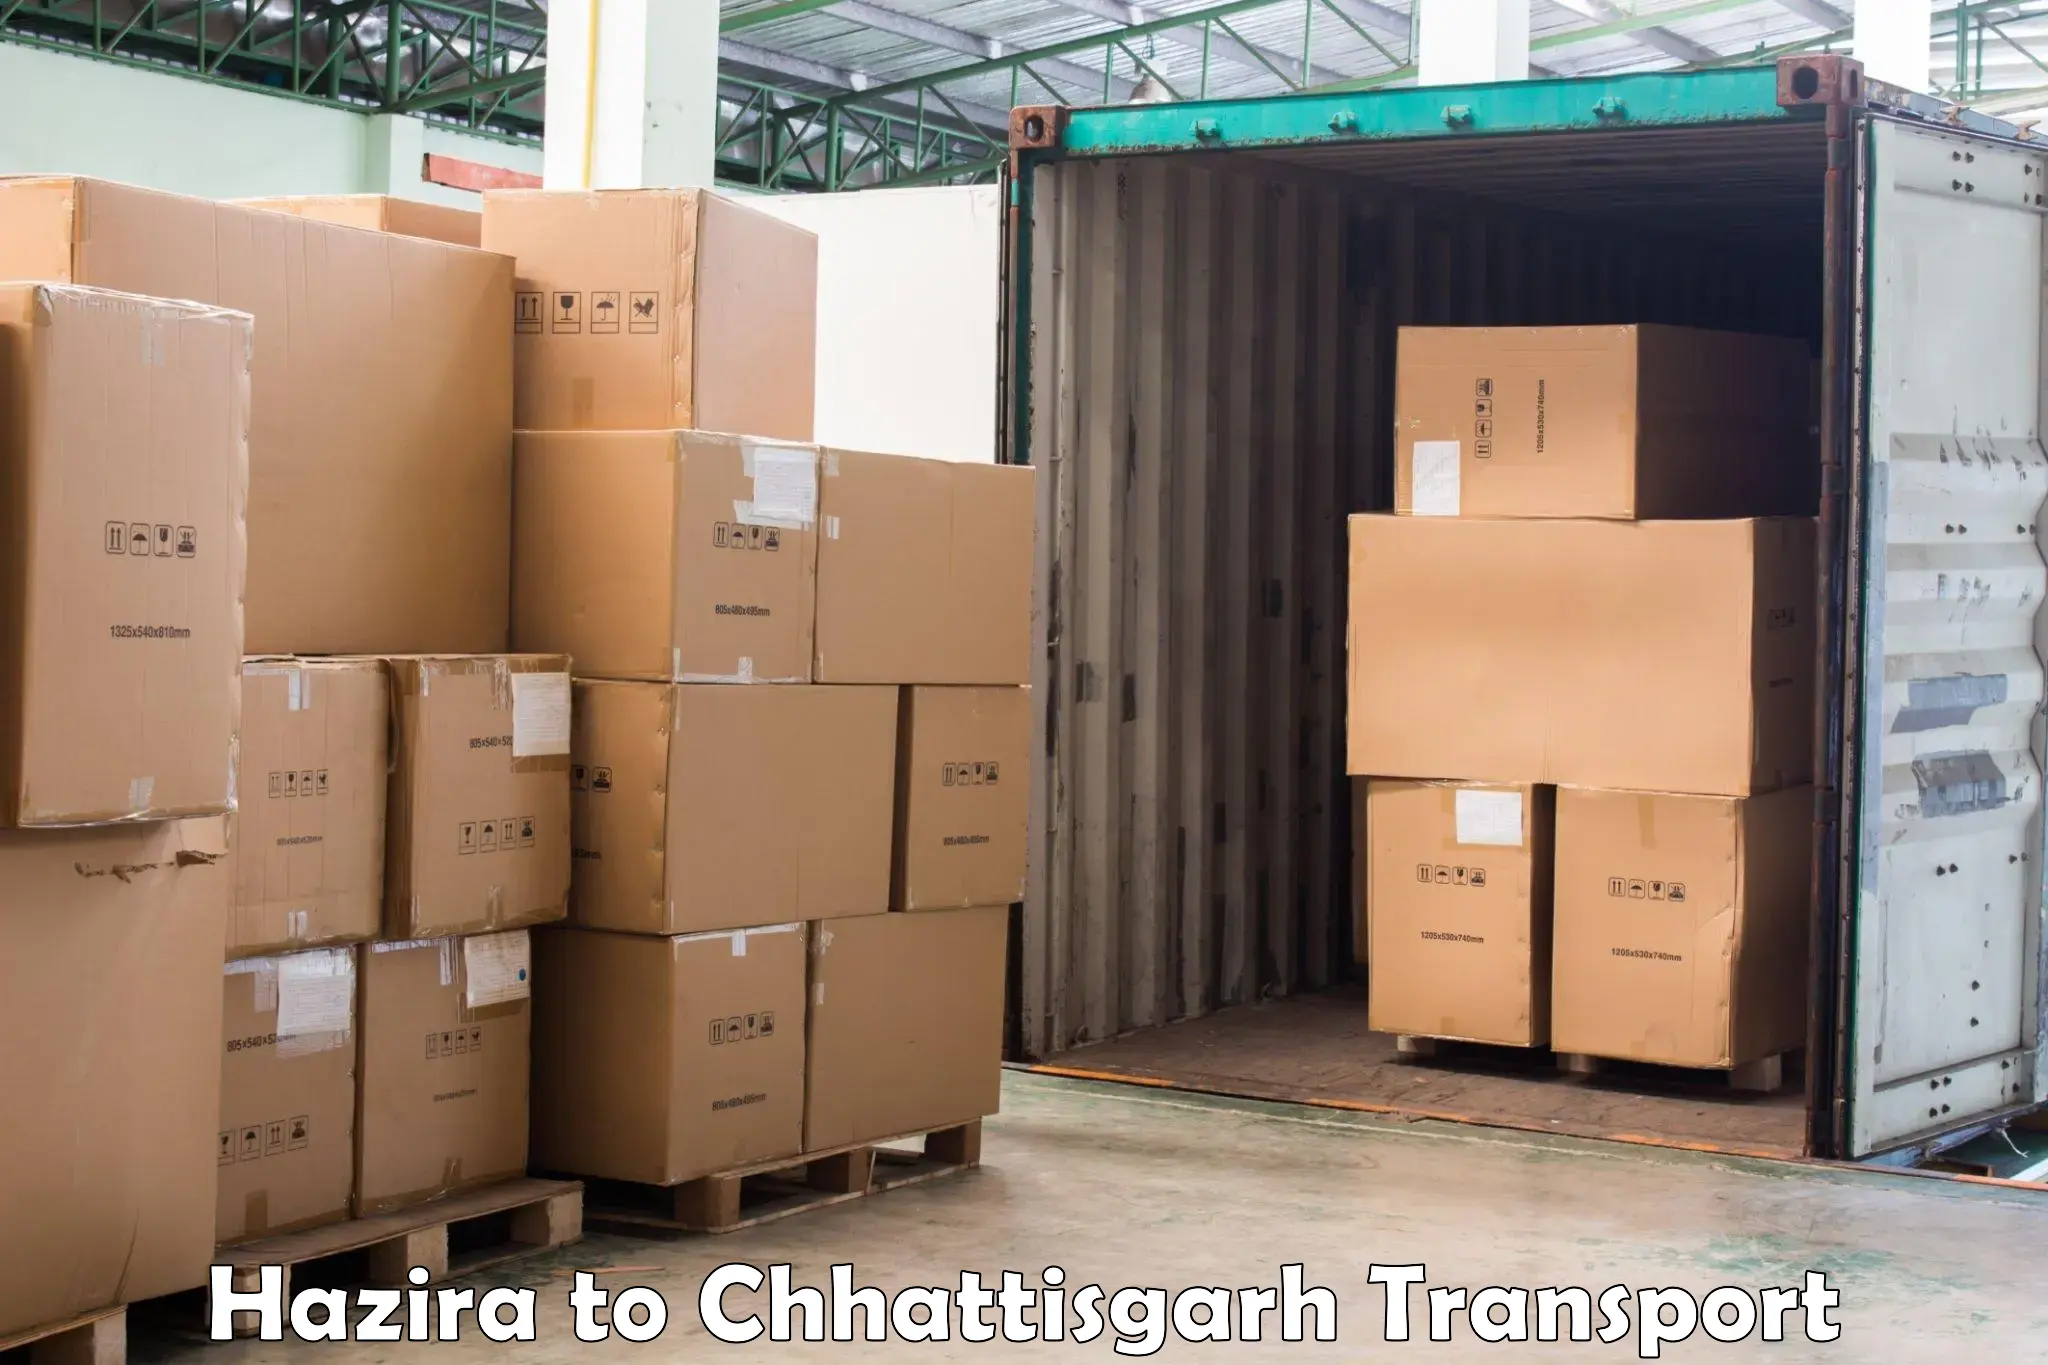 Truck transport companies in India Hazira to Bhatgaon